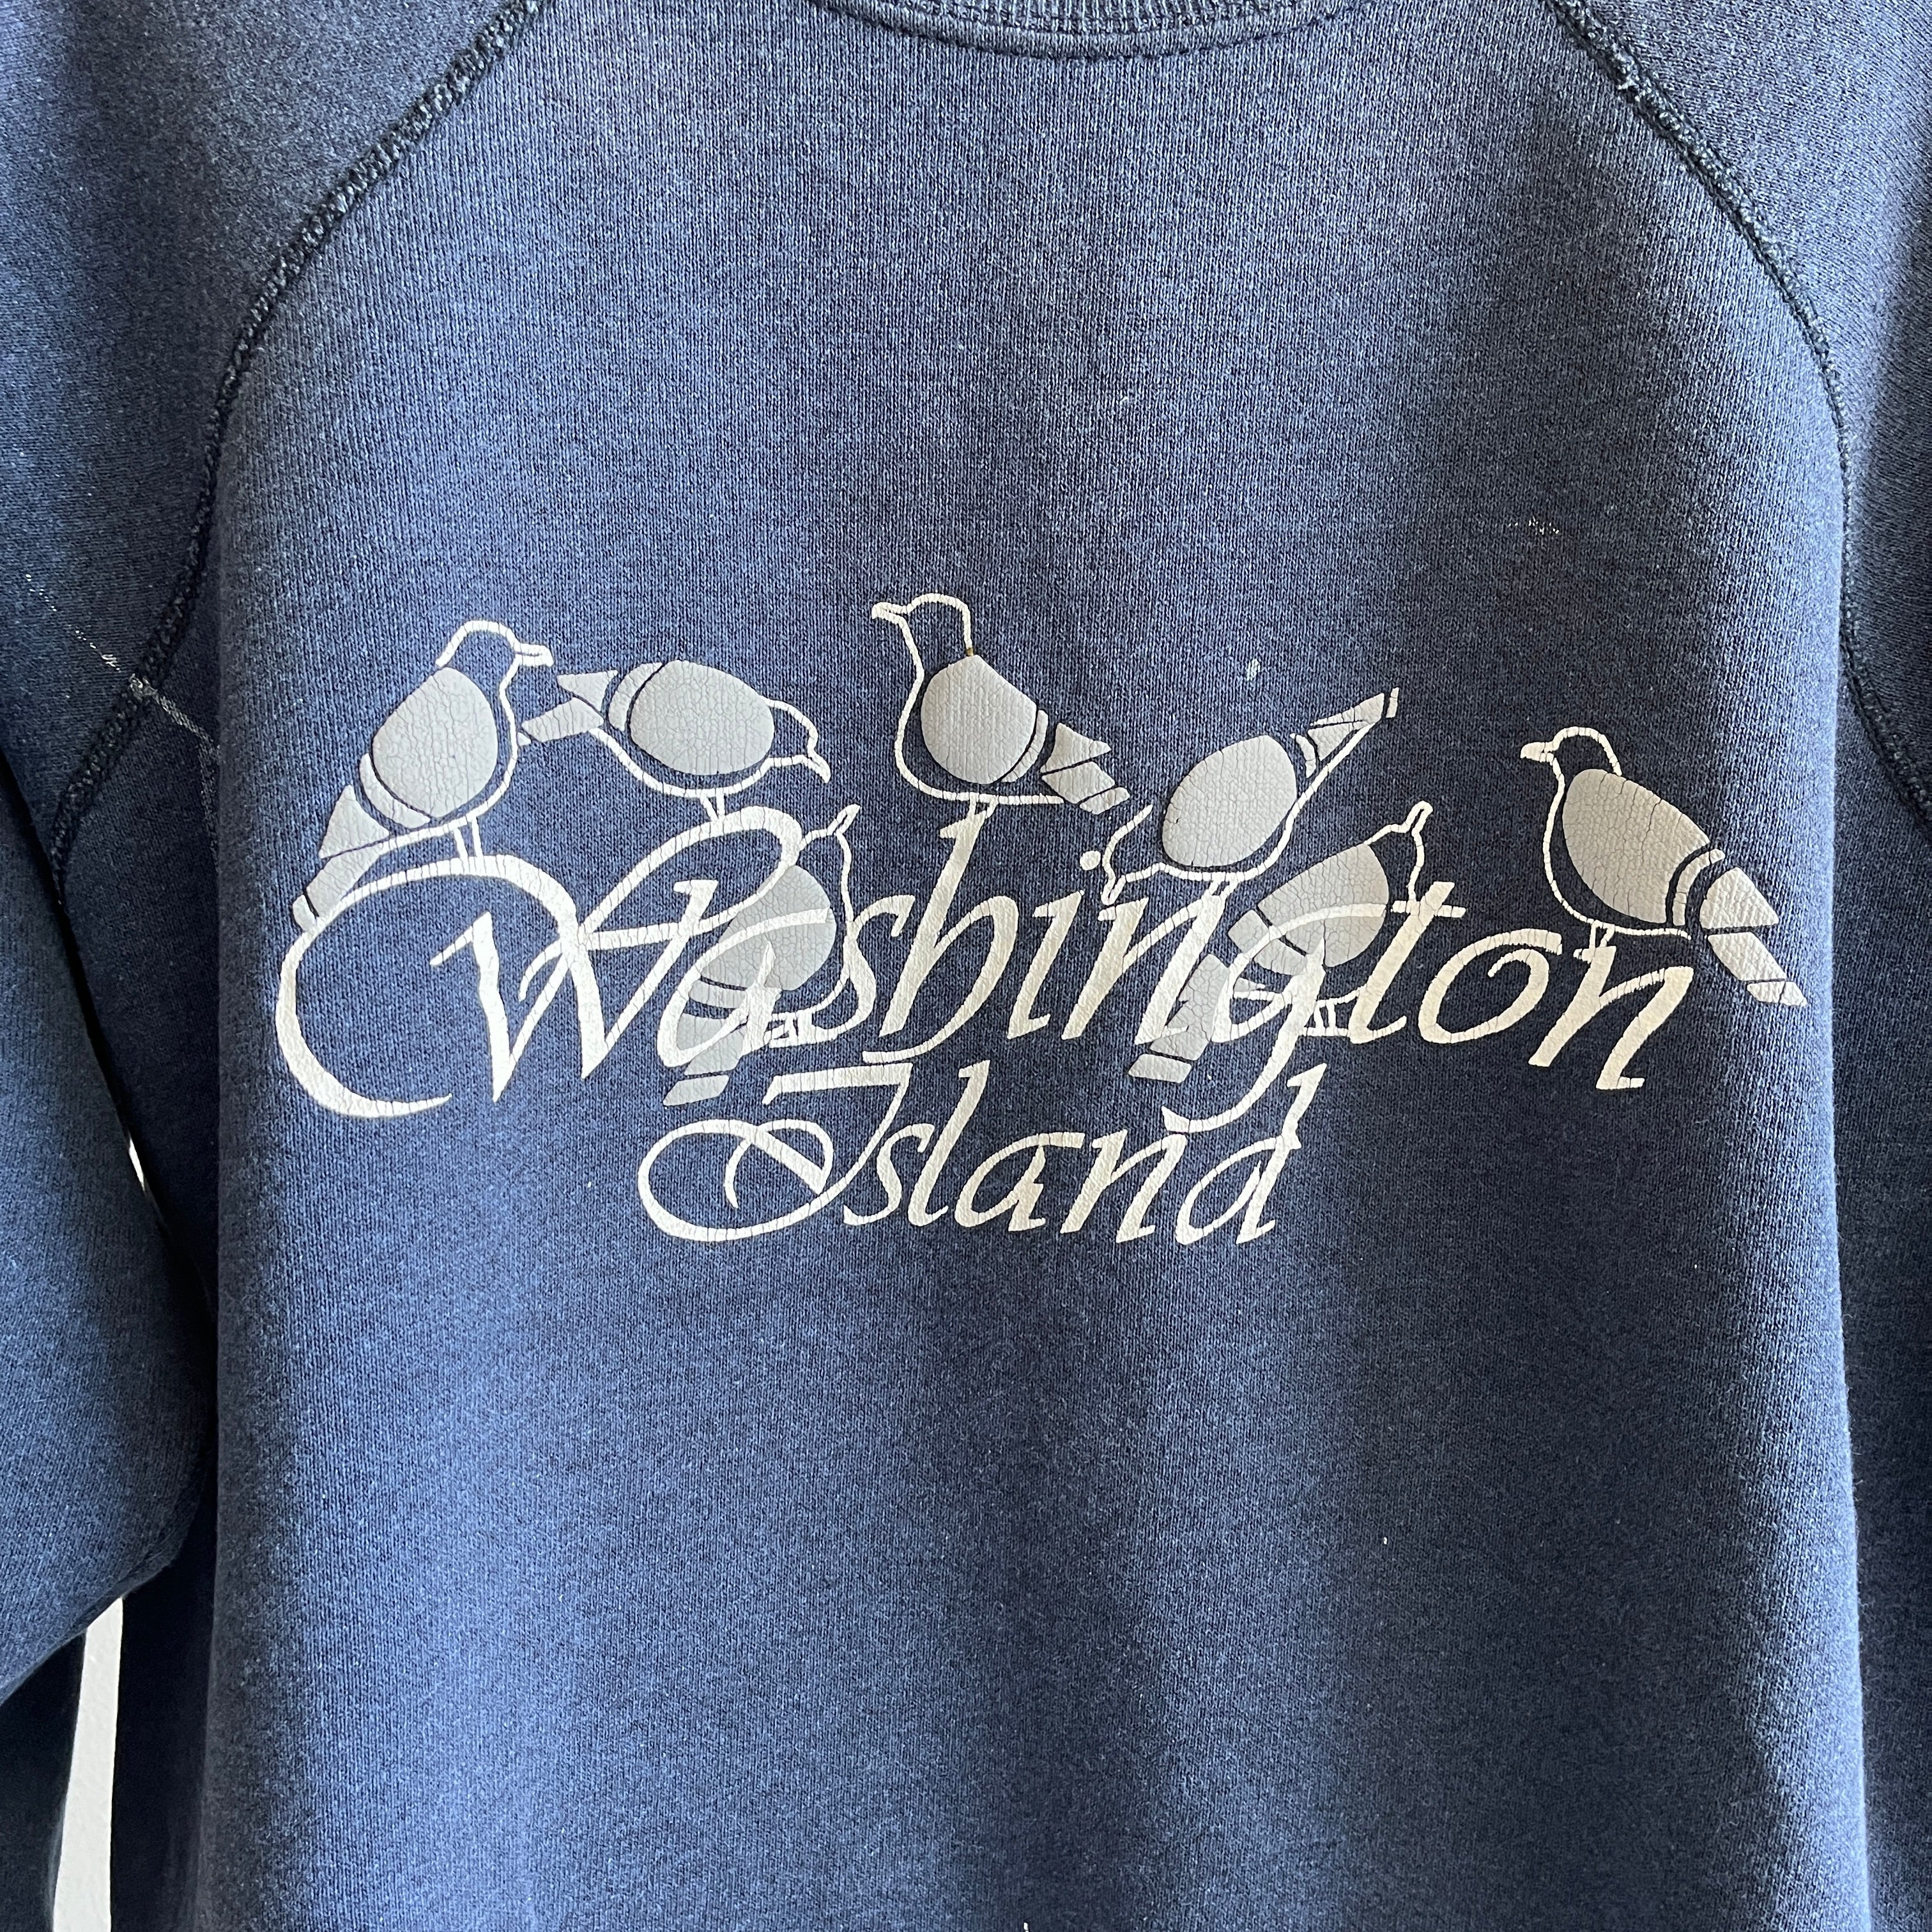 Sweat-shirt de l'île de Washington des années 1980